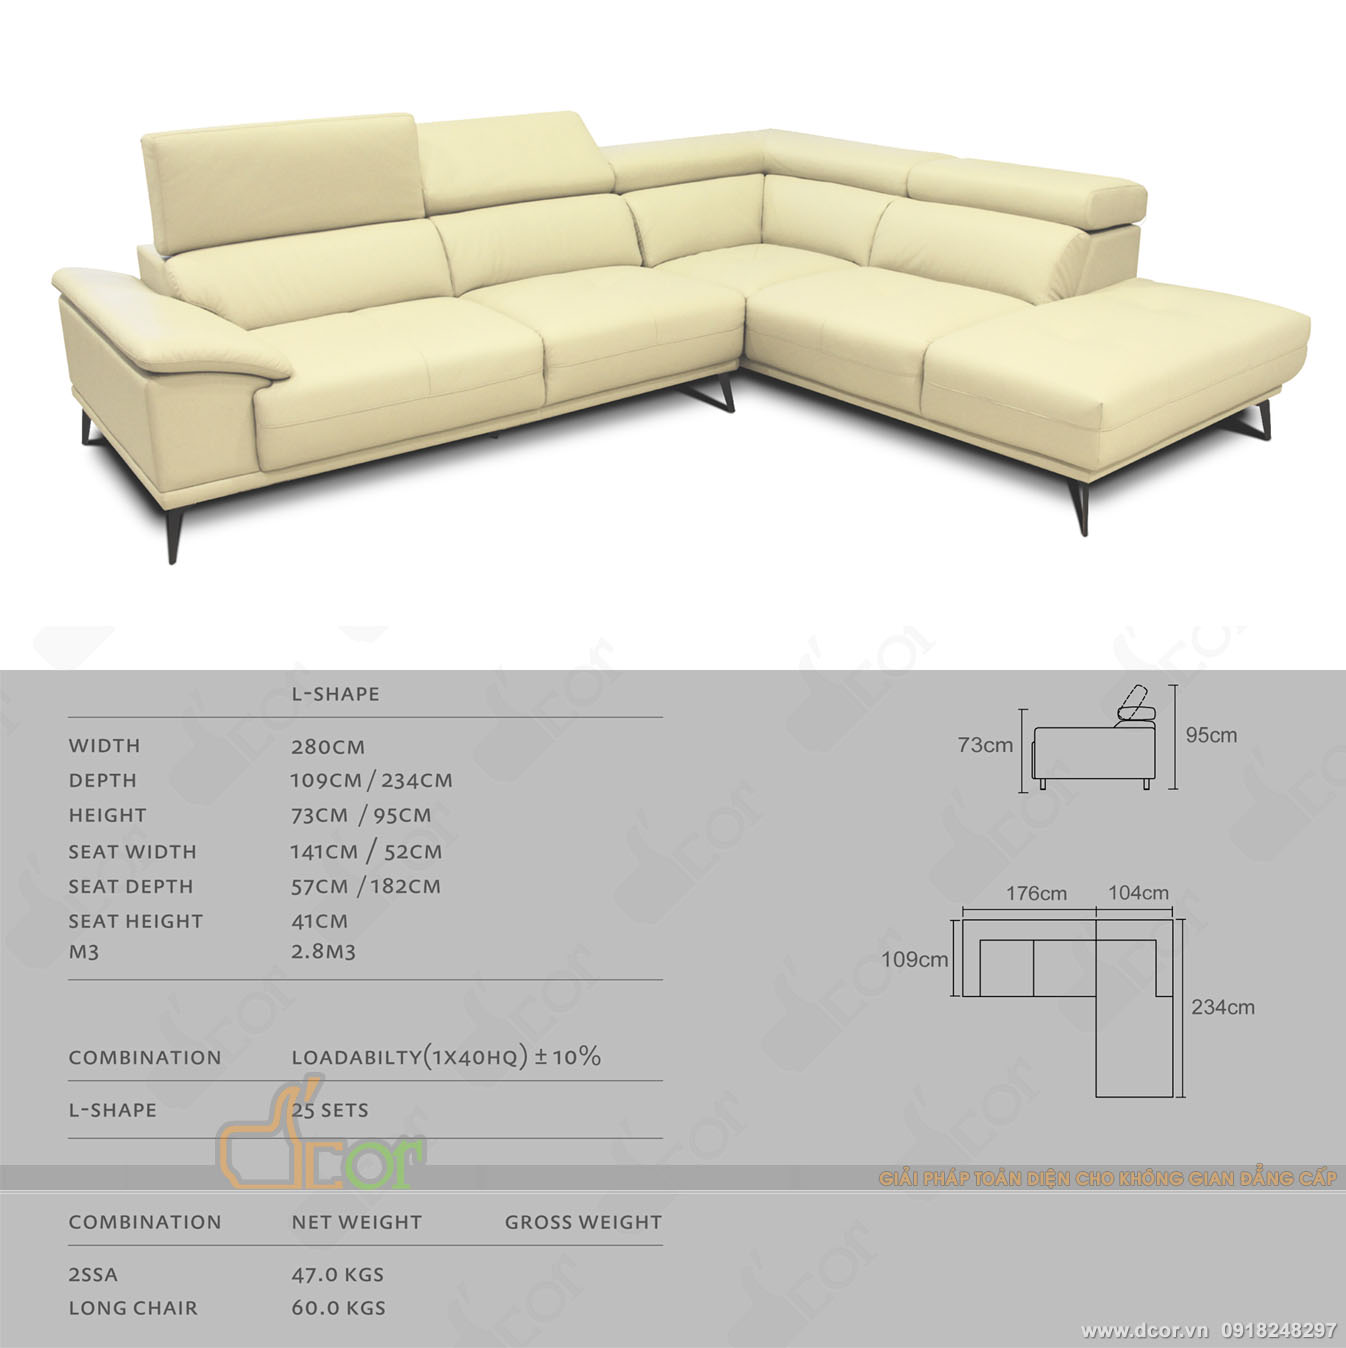 Sofa góc L da thật DG714 nhập khẩu Malaysia mang lại vẻ đẹp hiện đại 